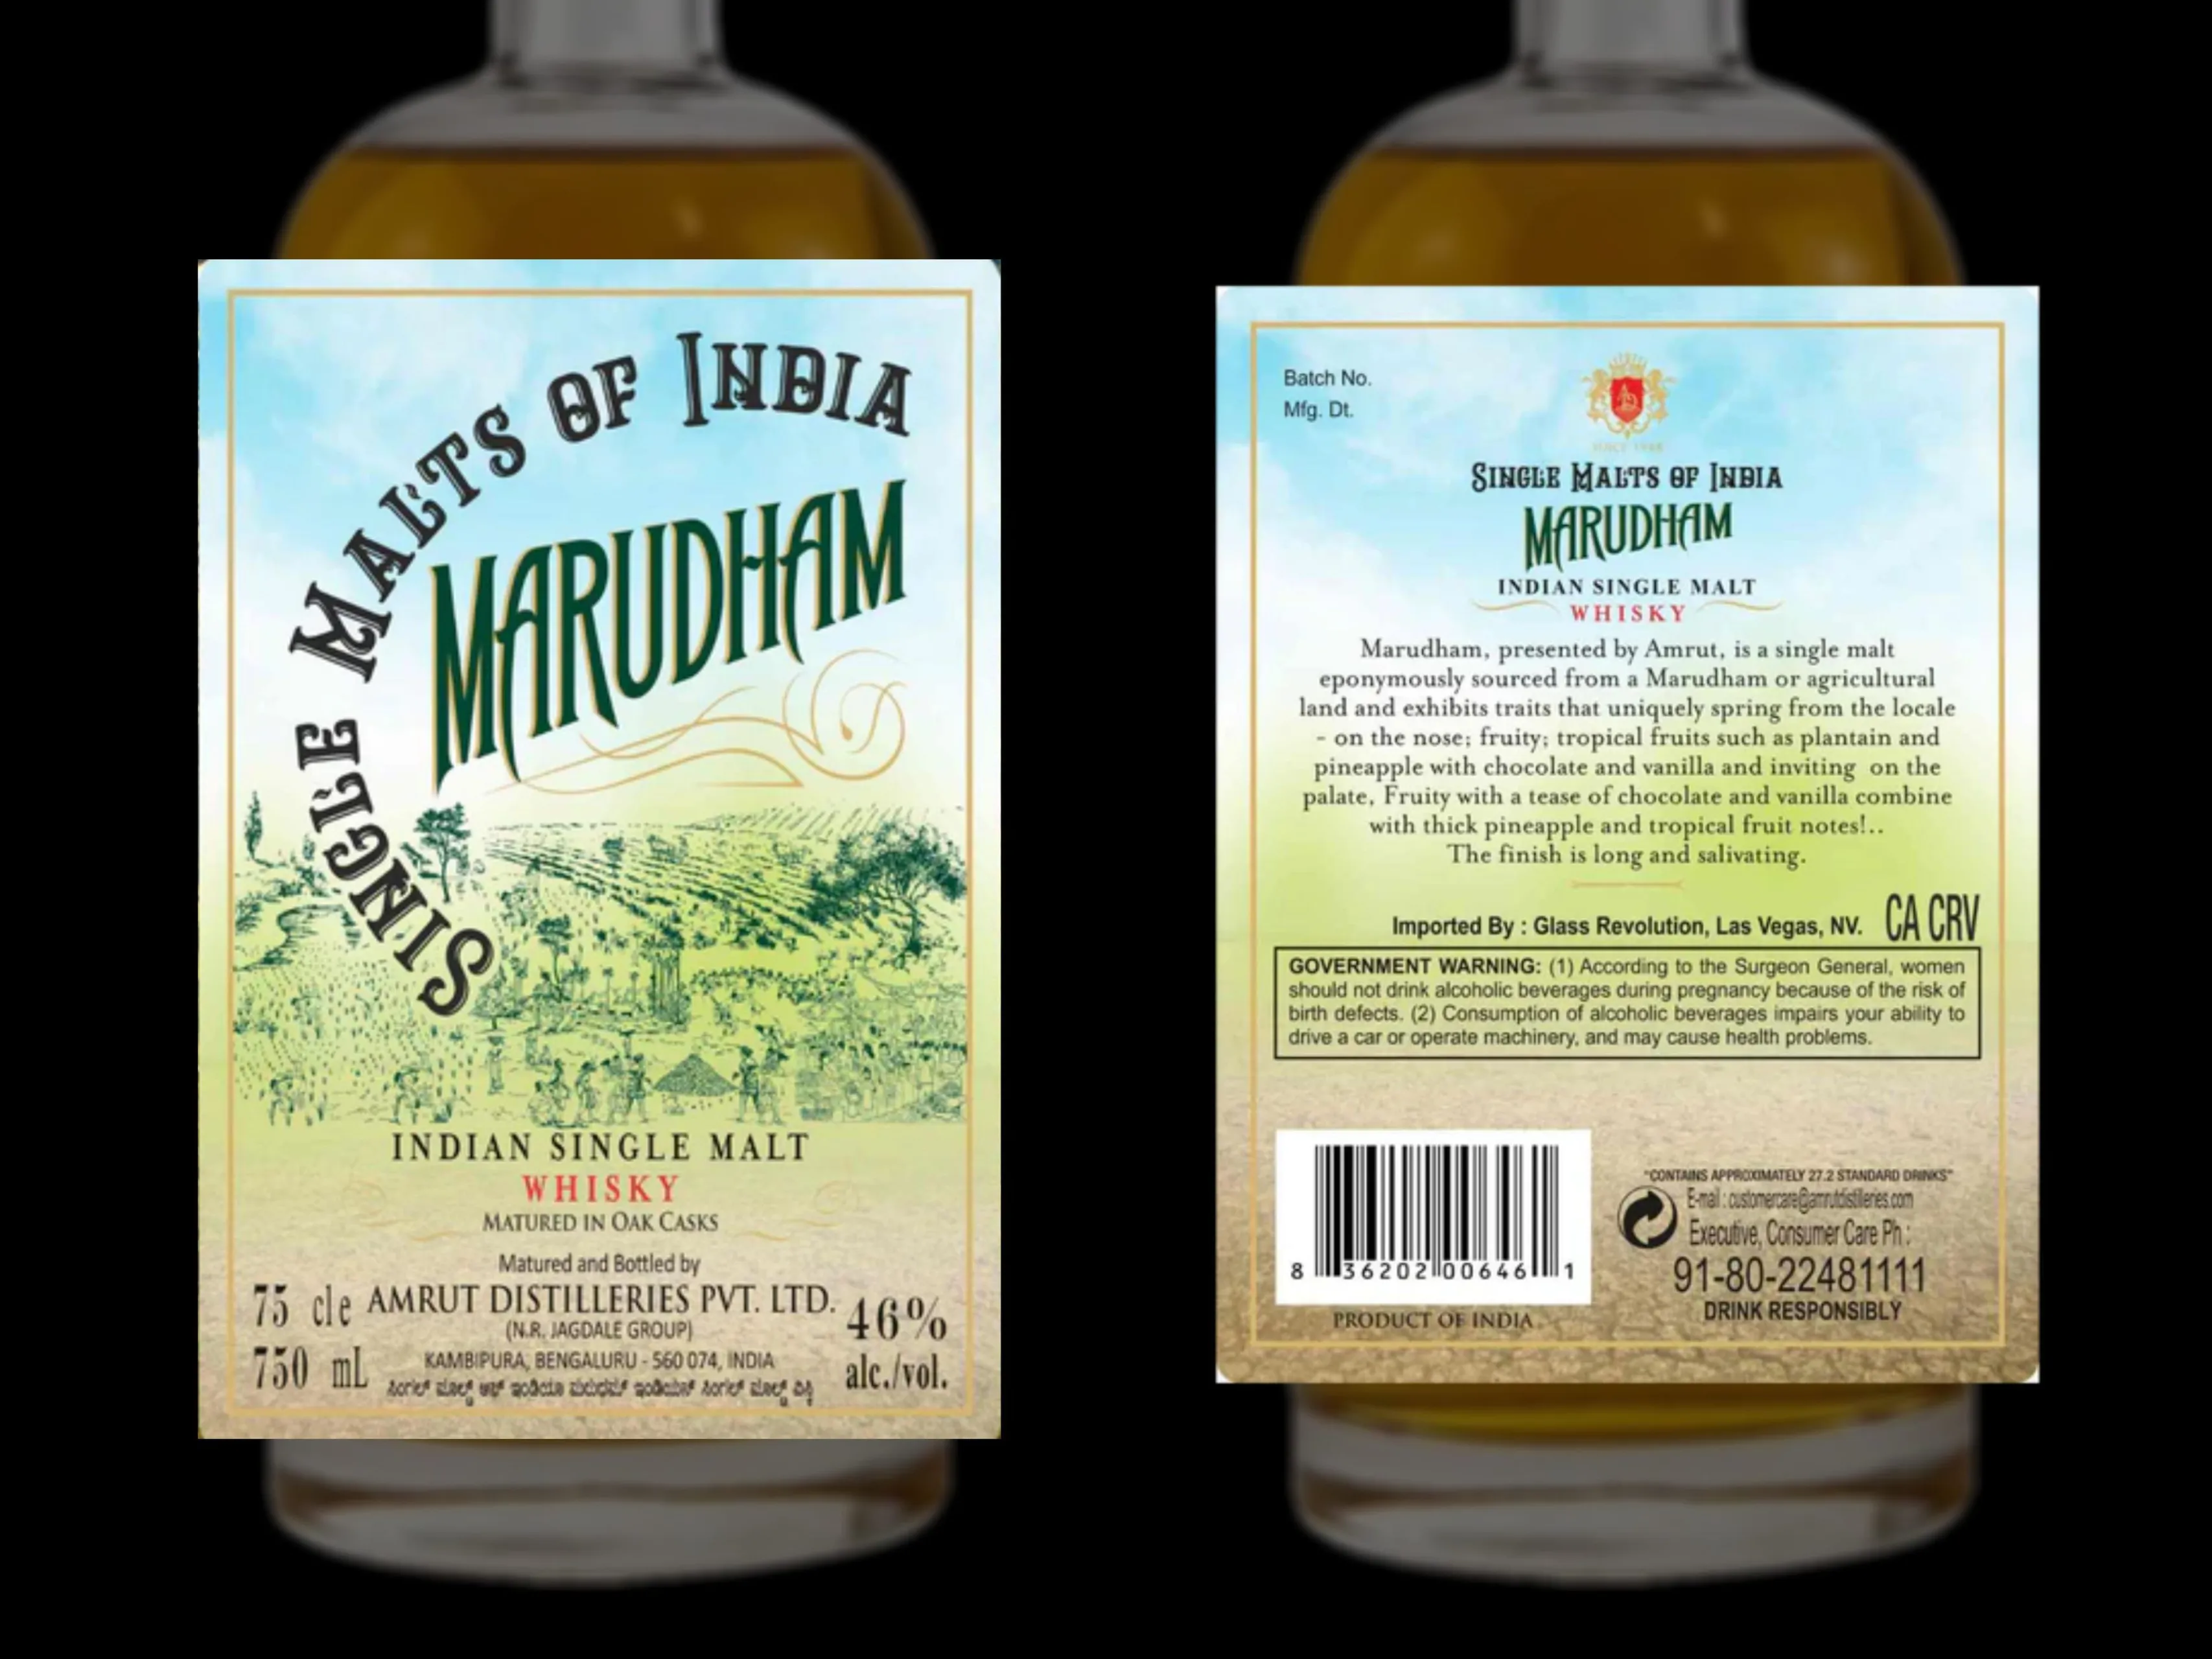 amrut single malts of india marudham whisky